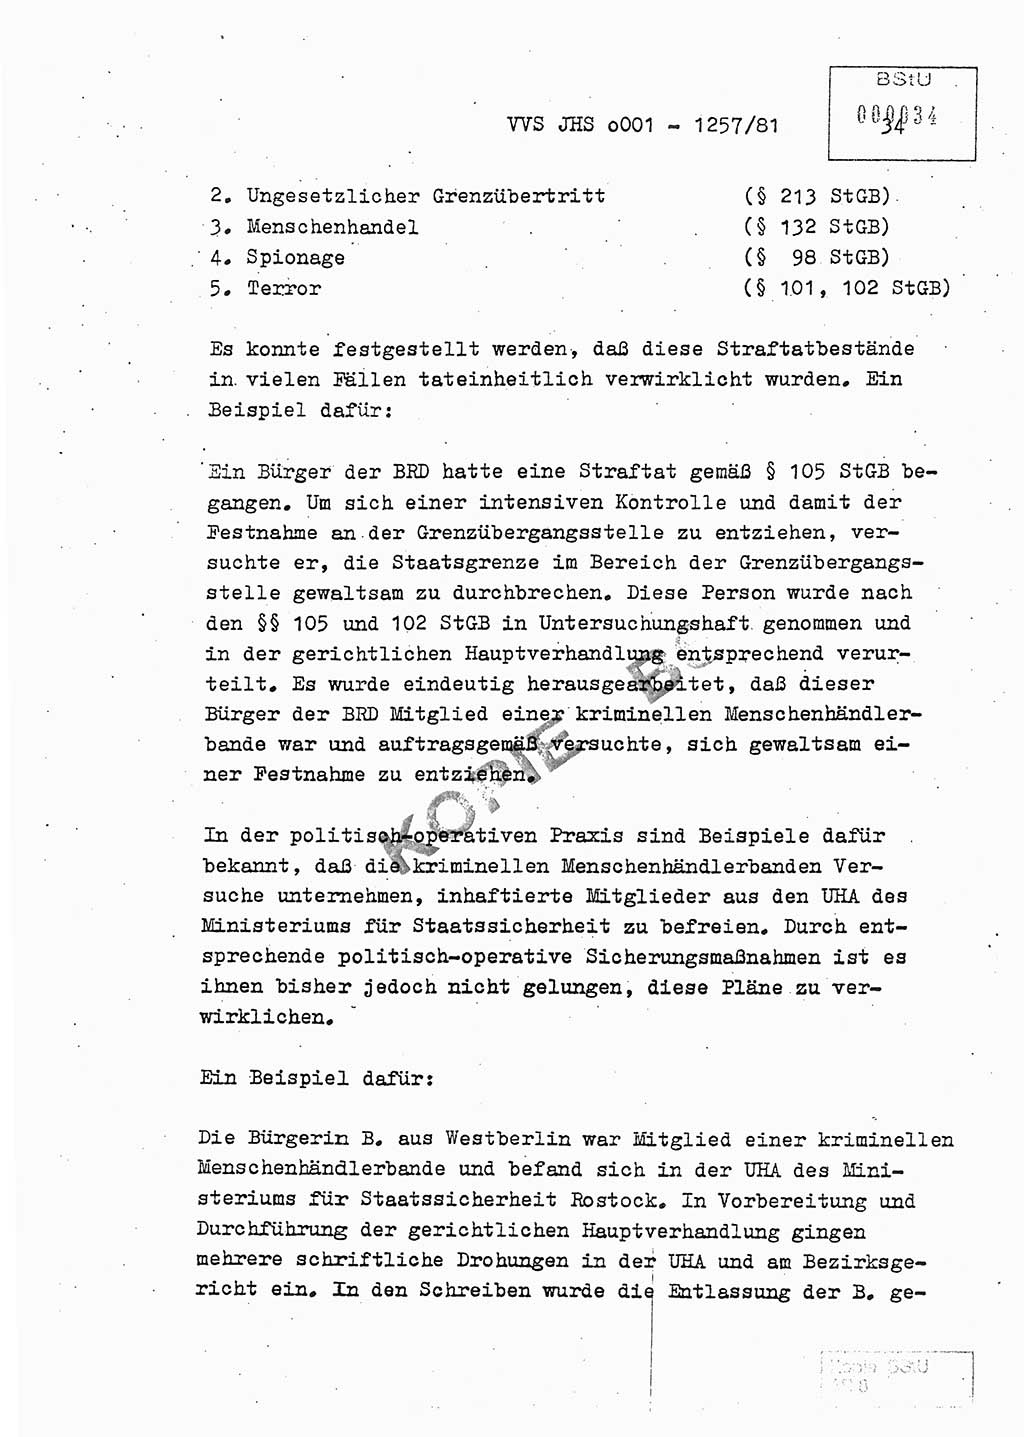 Fachschulabschlußarbeit Unterleutnant Dieter Möller (BV Rst. Abt. ⅩⅣ), Ministerium für Staatssicherheit (MfS) [Deutsche Demokratische Republik (DDR)], Juristische Hochschule (JHS), Vertrauliche Verschlußsache (VVS) o001-1257/81, Potsdam 1982, Seite 34 (FS-Abschl.-Arb. MfS DDR JHS VVS o001-1257/81 1982, S. 34)